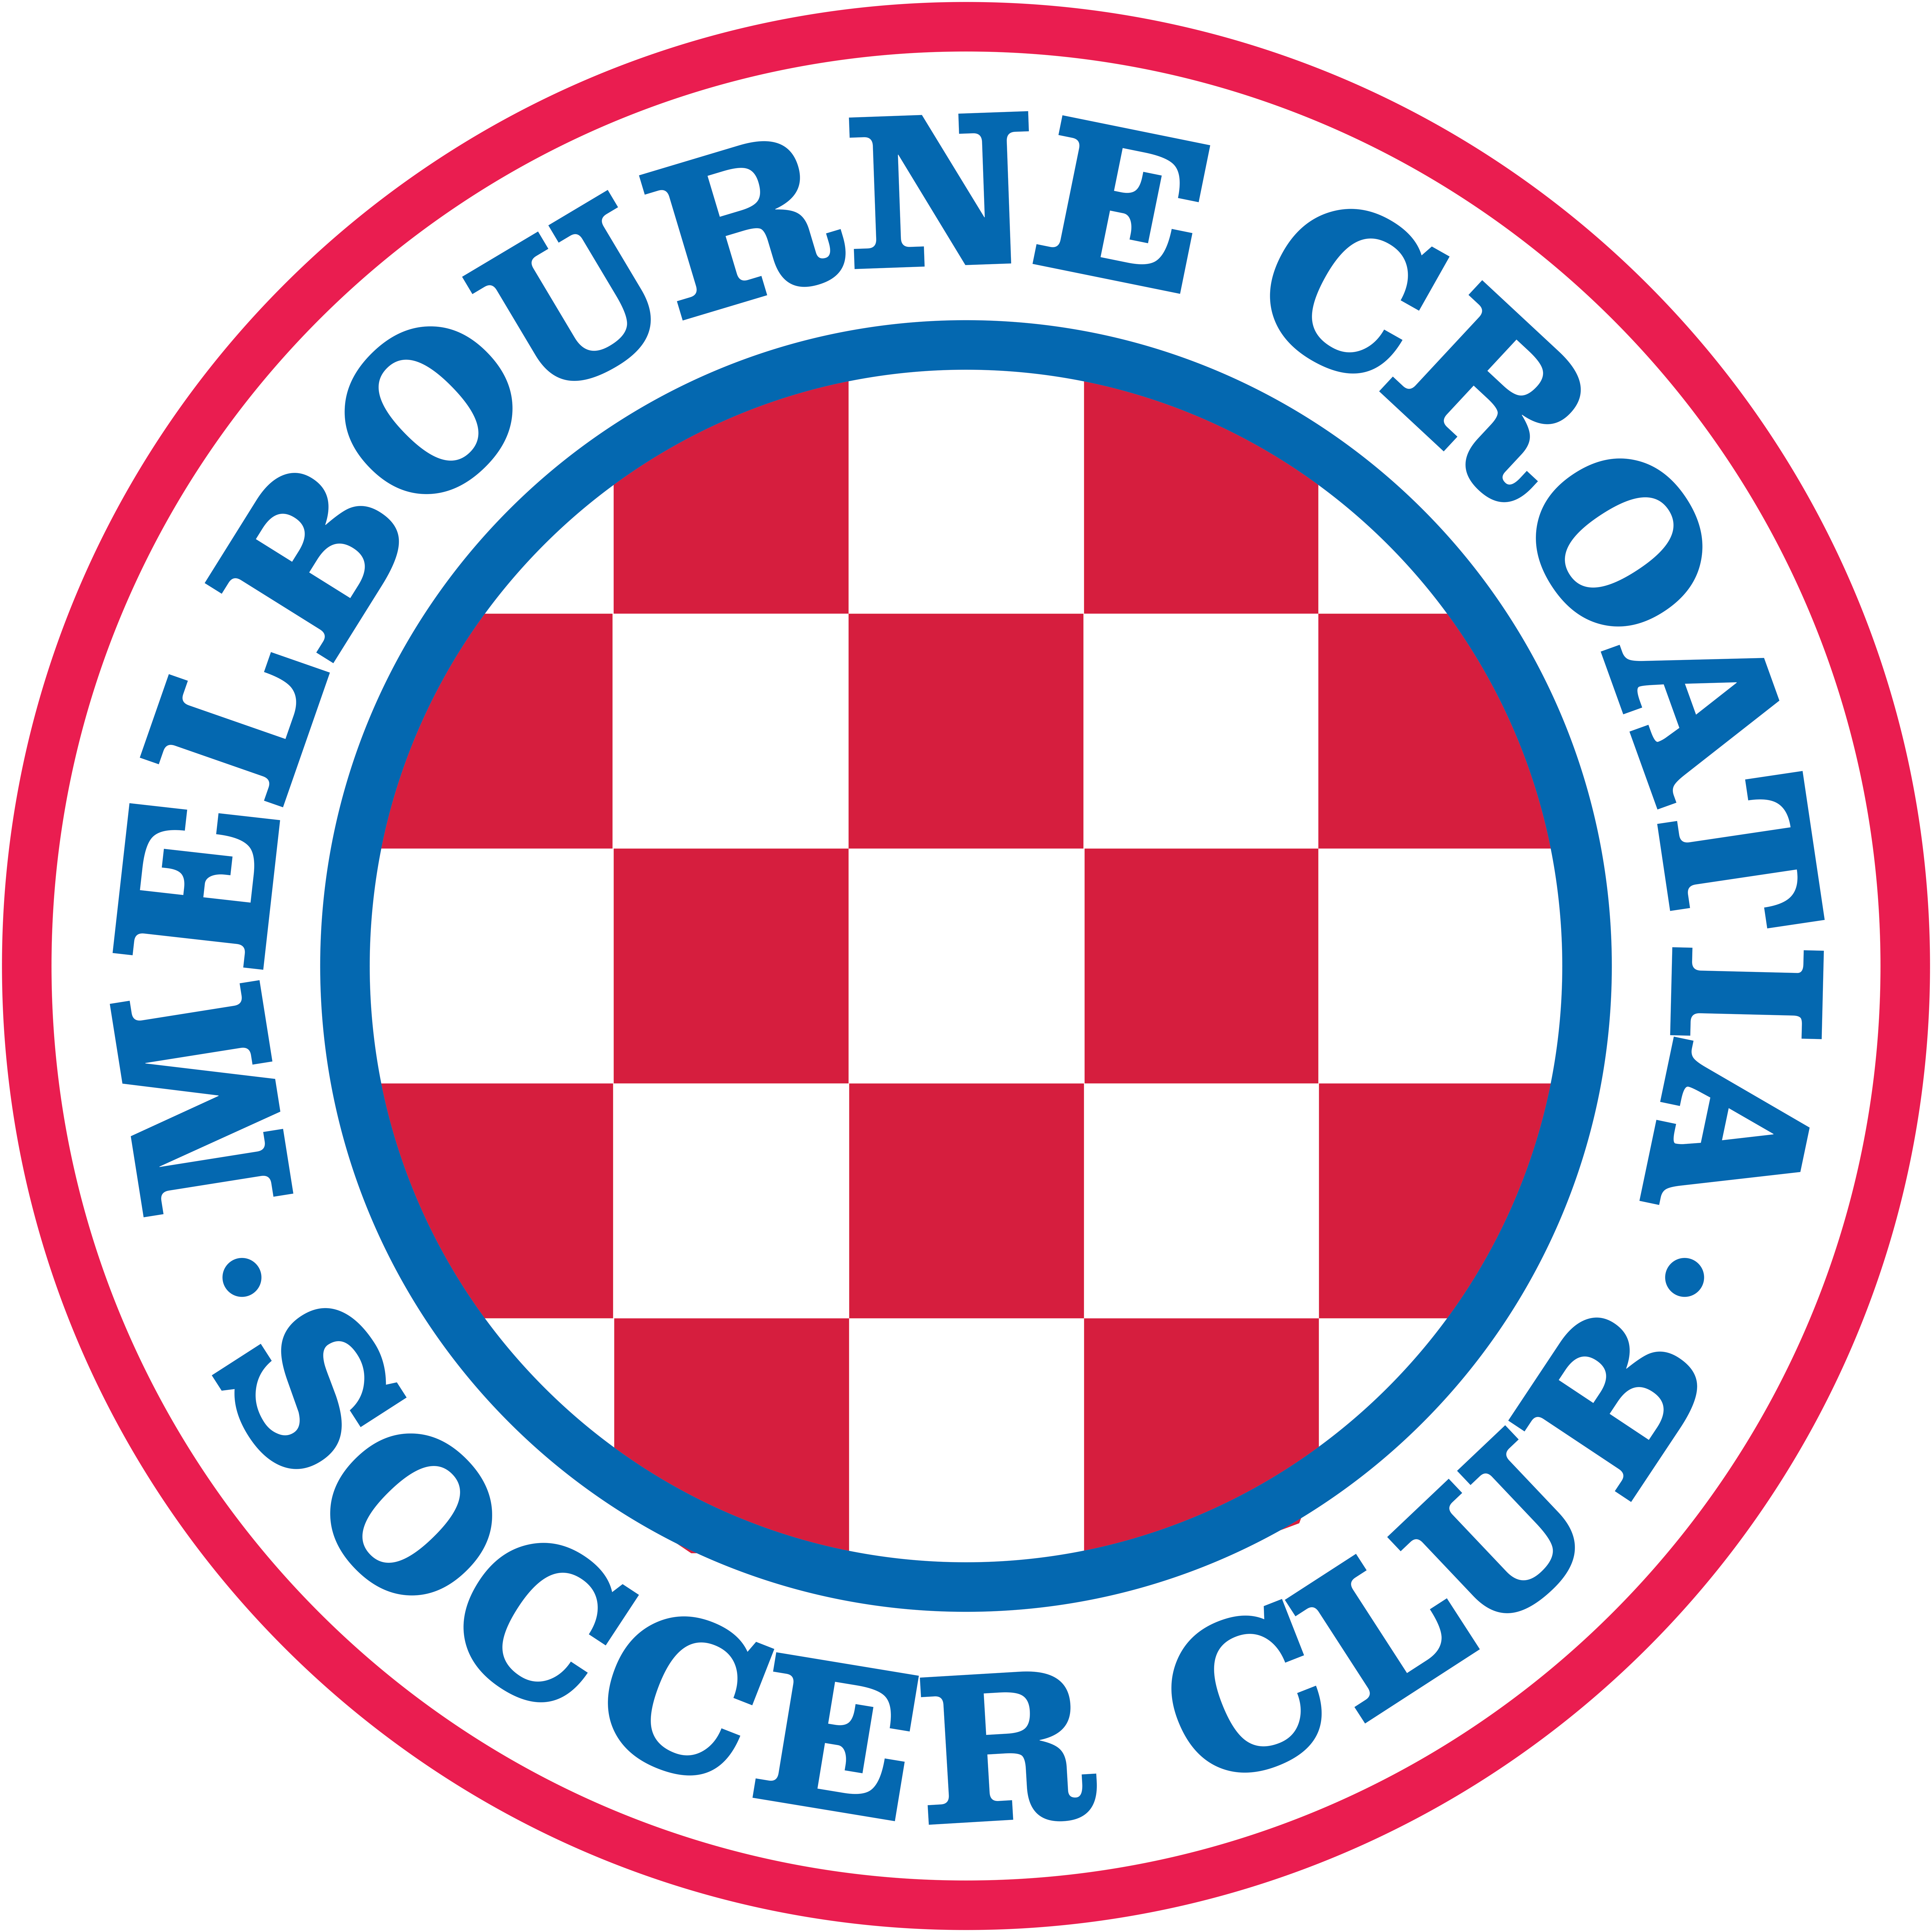 Melbourne Croatia Soccer Club